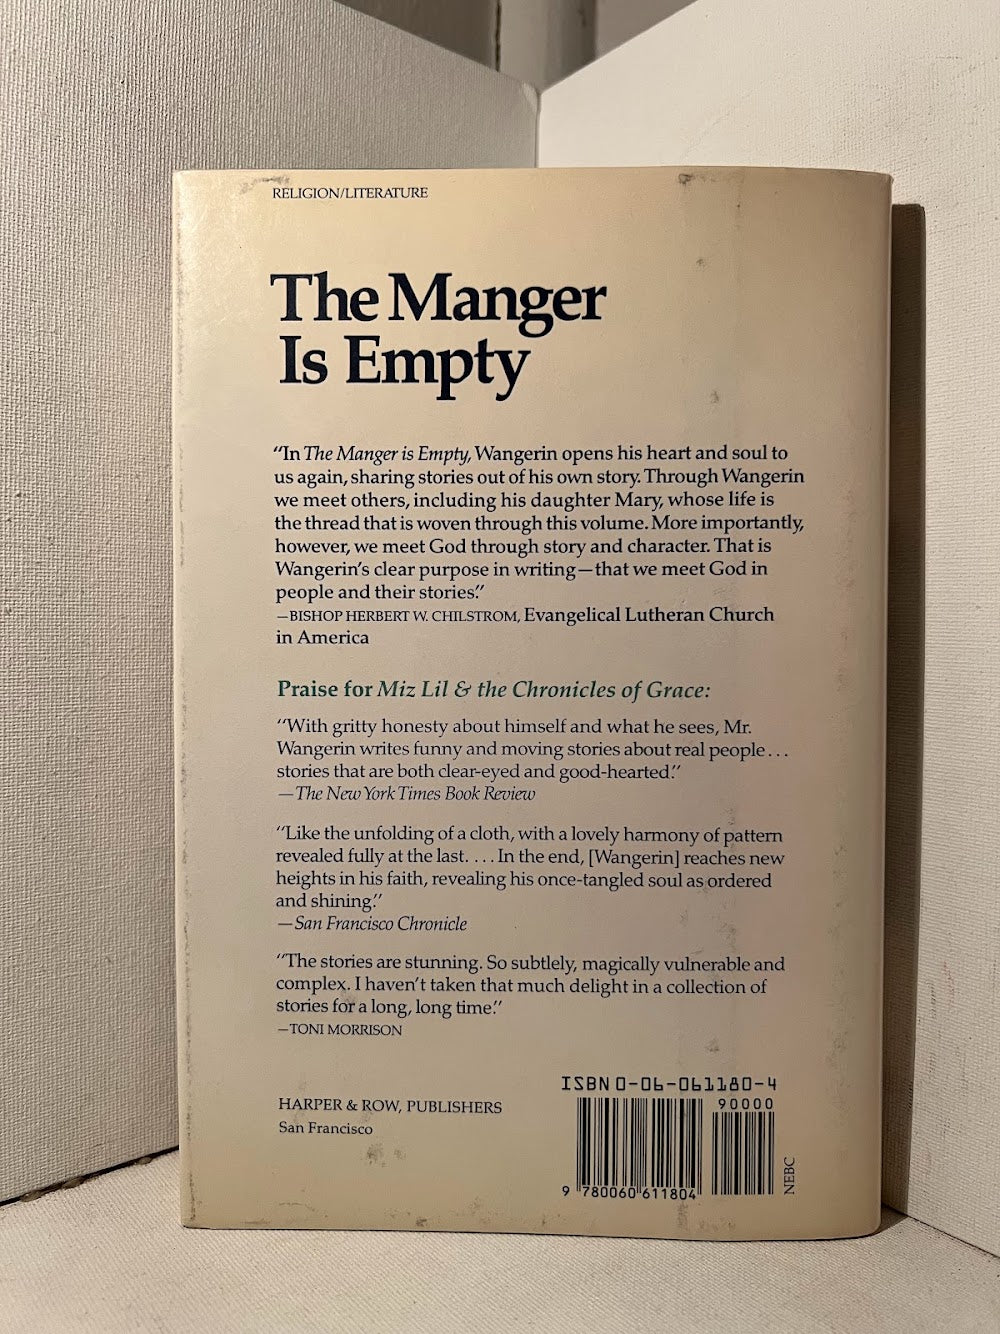 The Manger is Empty by Walter Mangerin Jr.